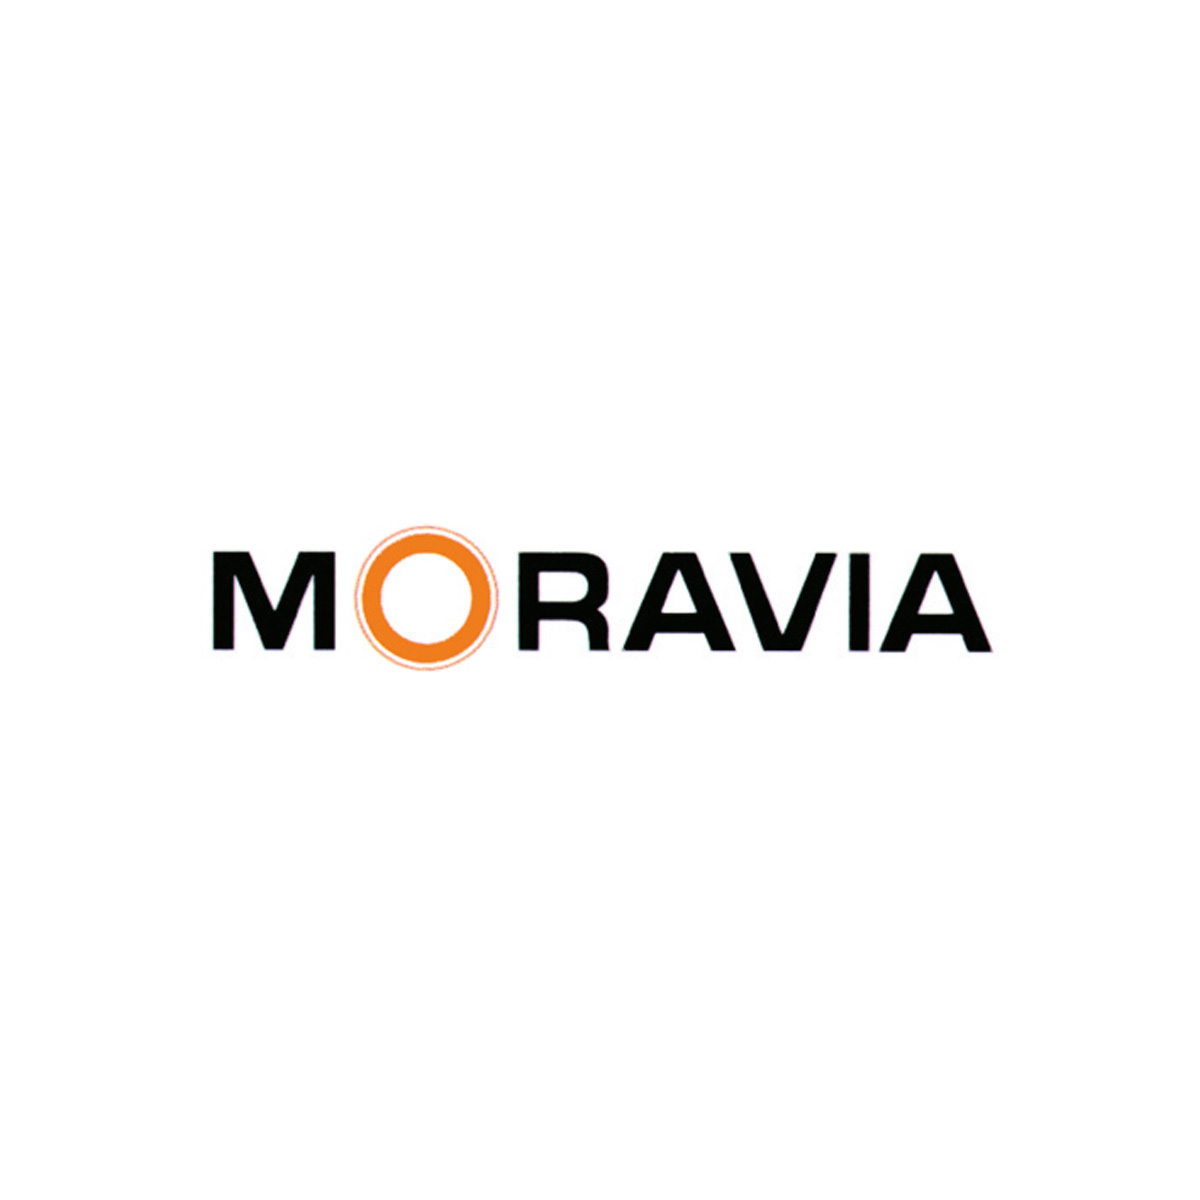 Moravia